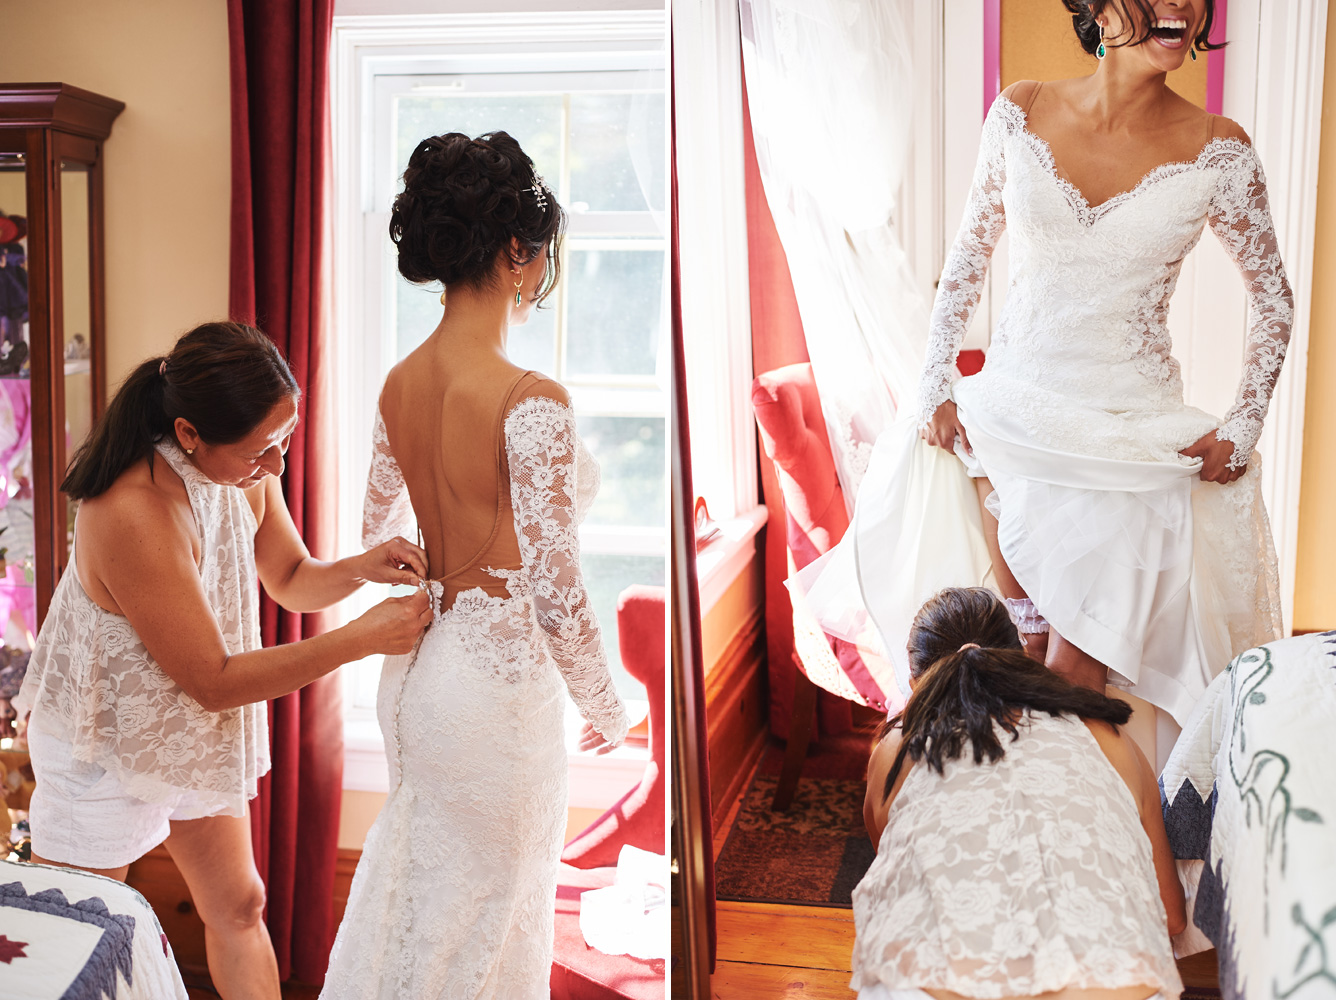 bride-getting-dressed-in-her-wedding-dress.jpg